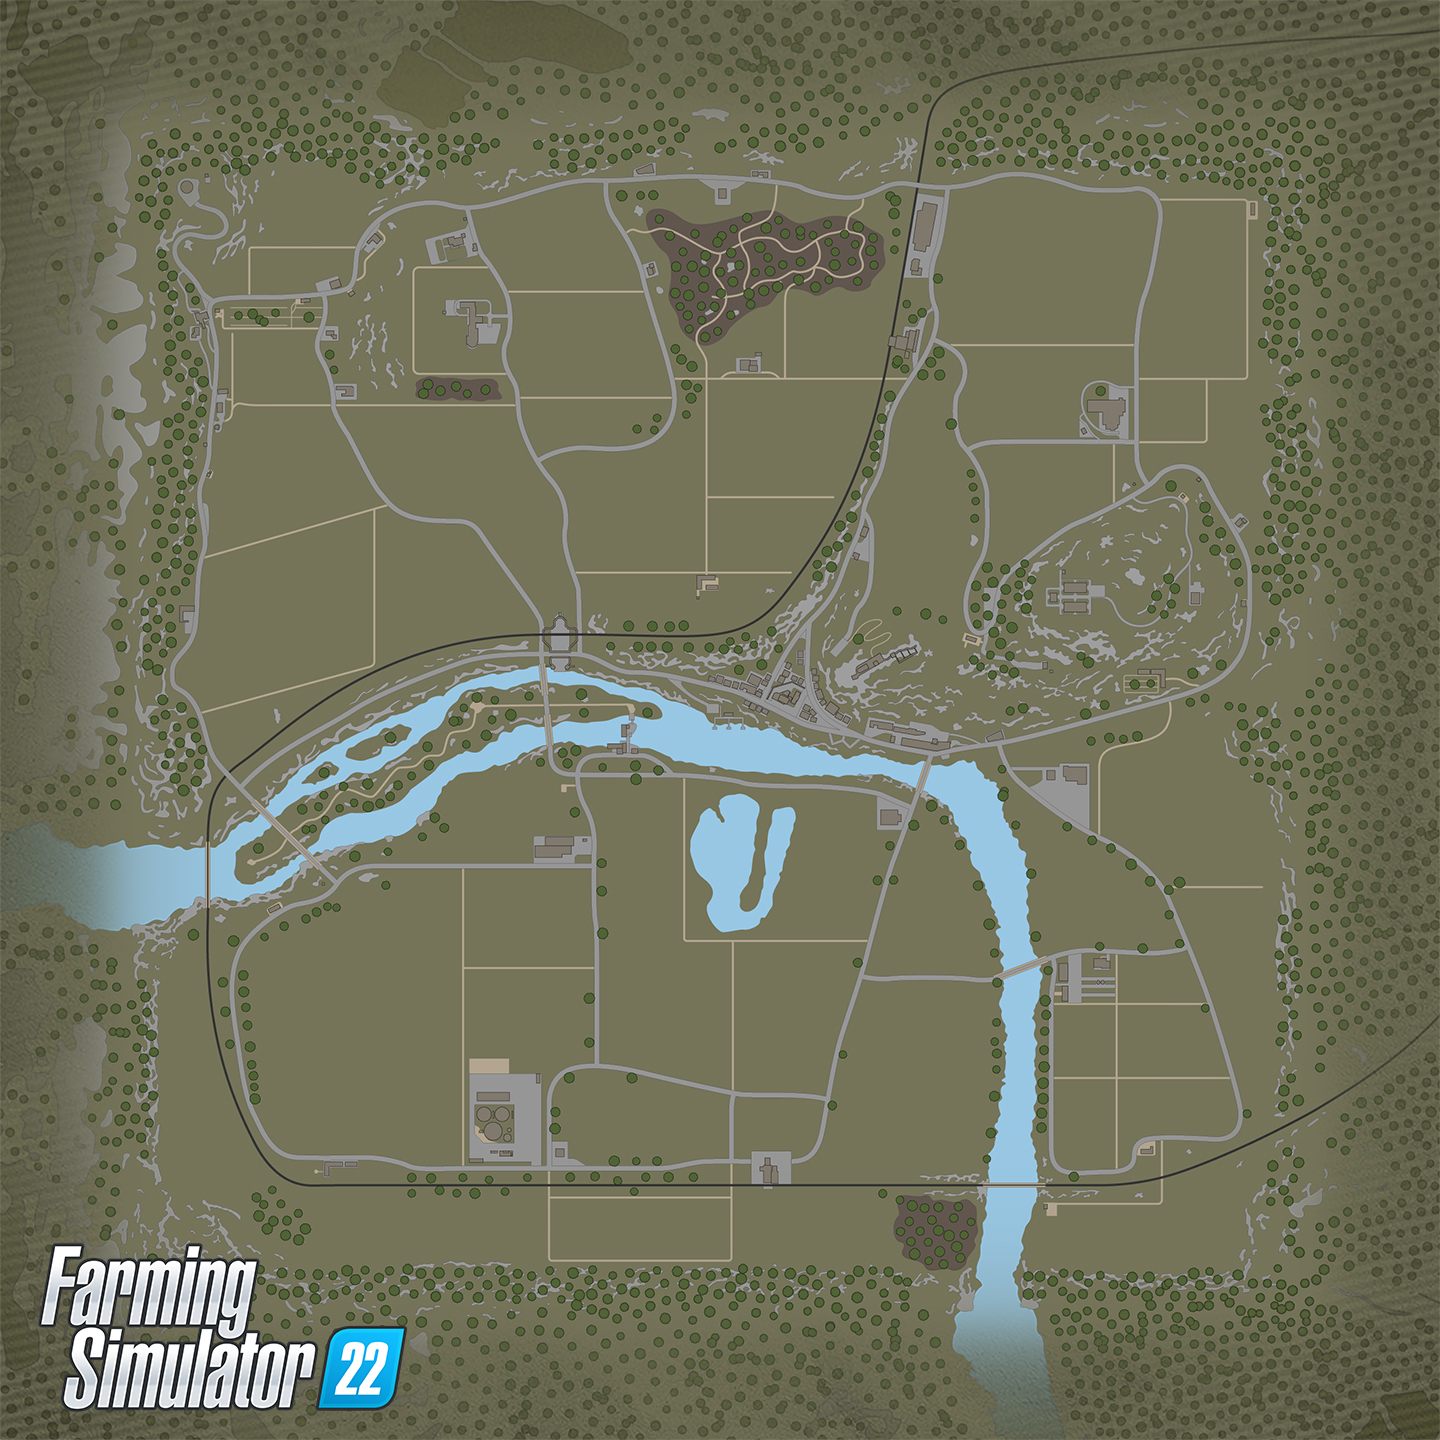 Harta franceză Haut-Beyleron în Farming Simulator 22 